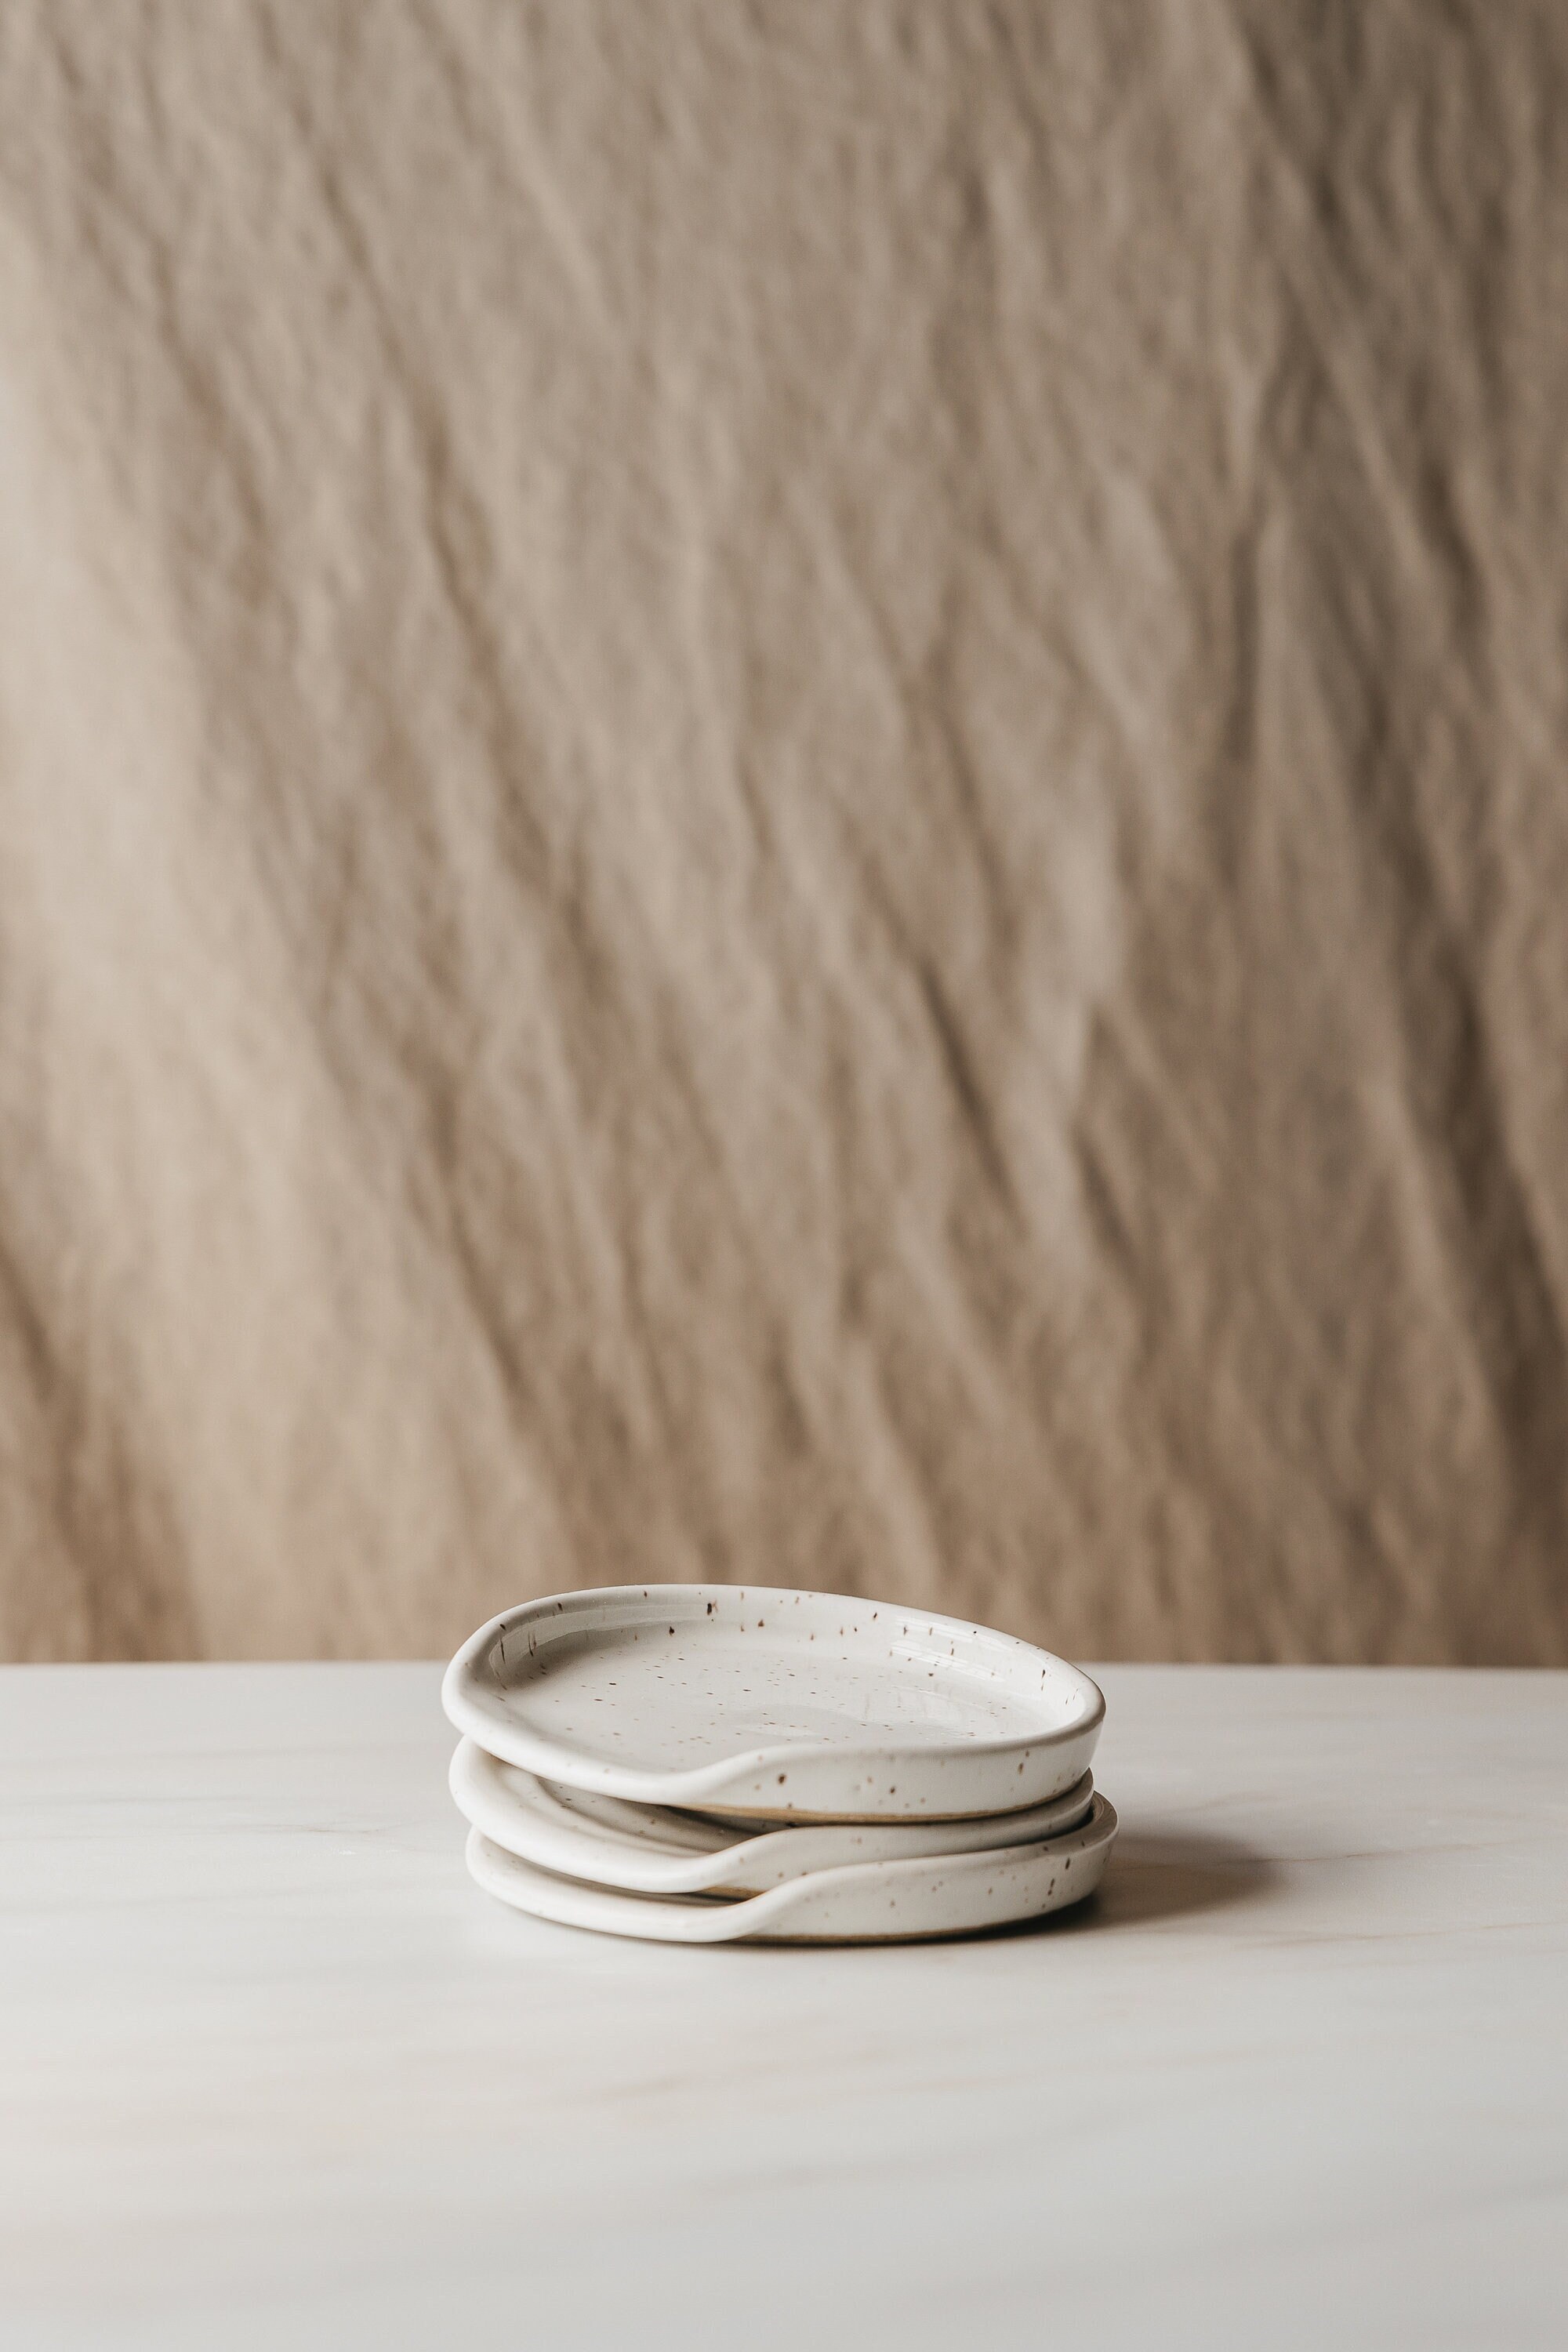 Le repose-cuillère céramique blanche, Simons Maison